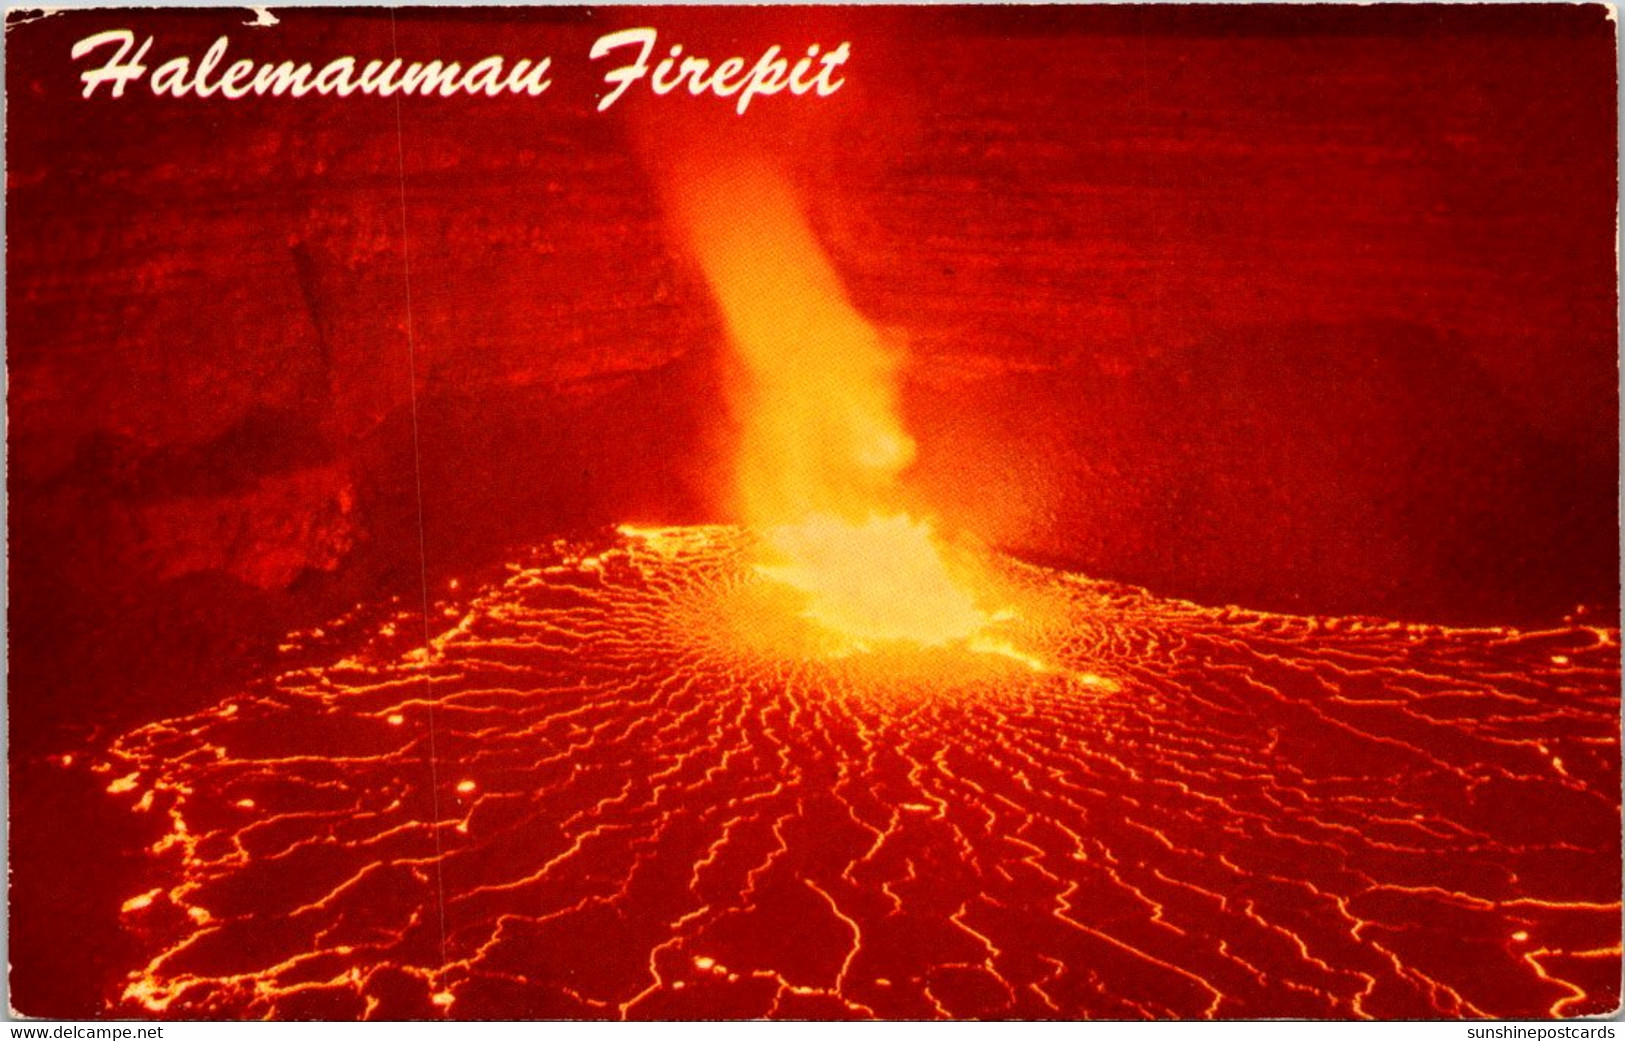 Hawaii National Park Eruption Of Kilauea Volcano - Hawaï